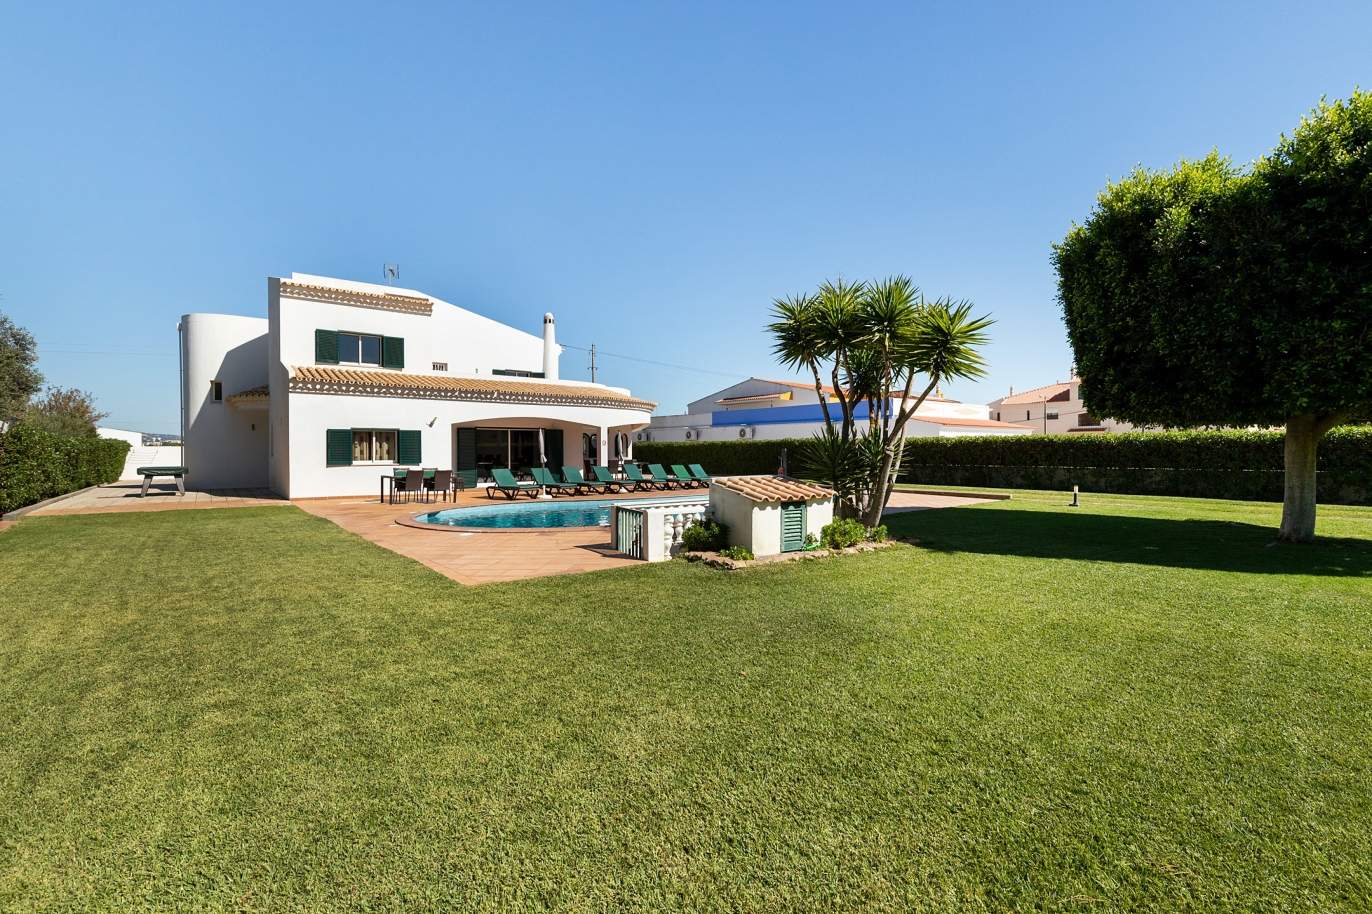 Villa de 4 dormitorios, con piscina y jardín, Albufeira, Algarve_180585